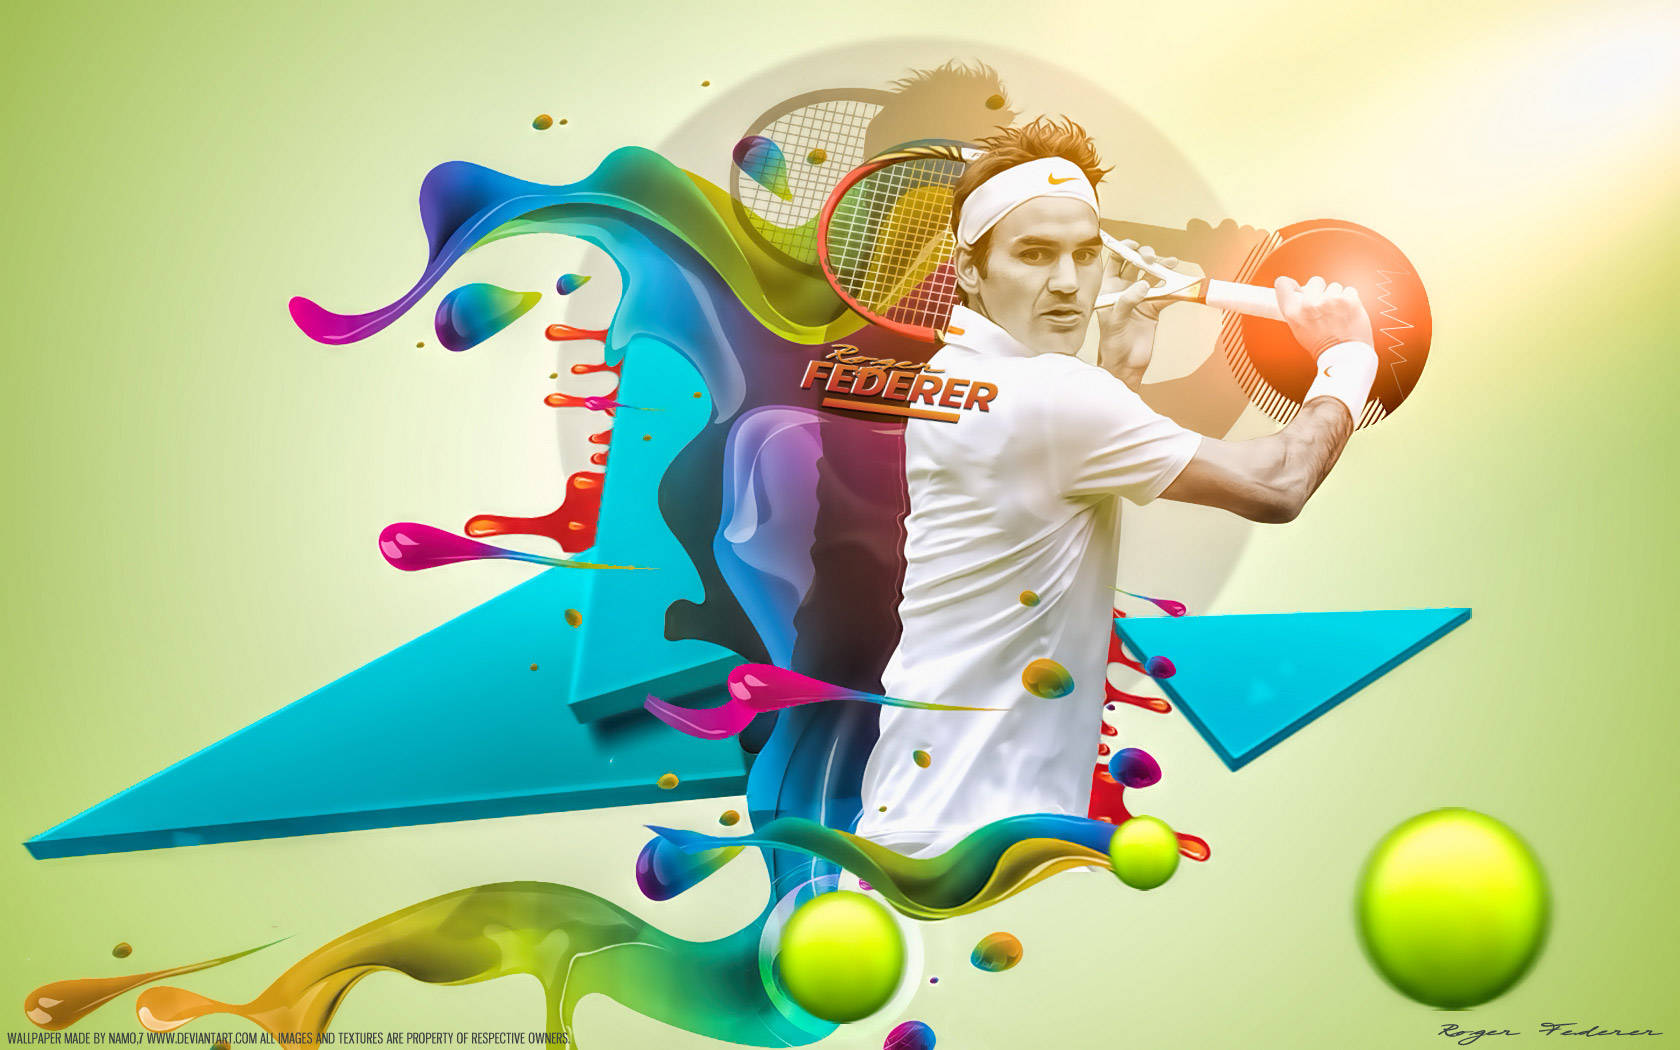 Roger Federer Tennis Poster